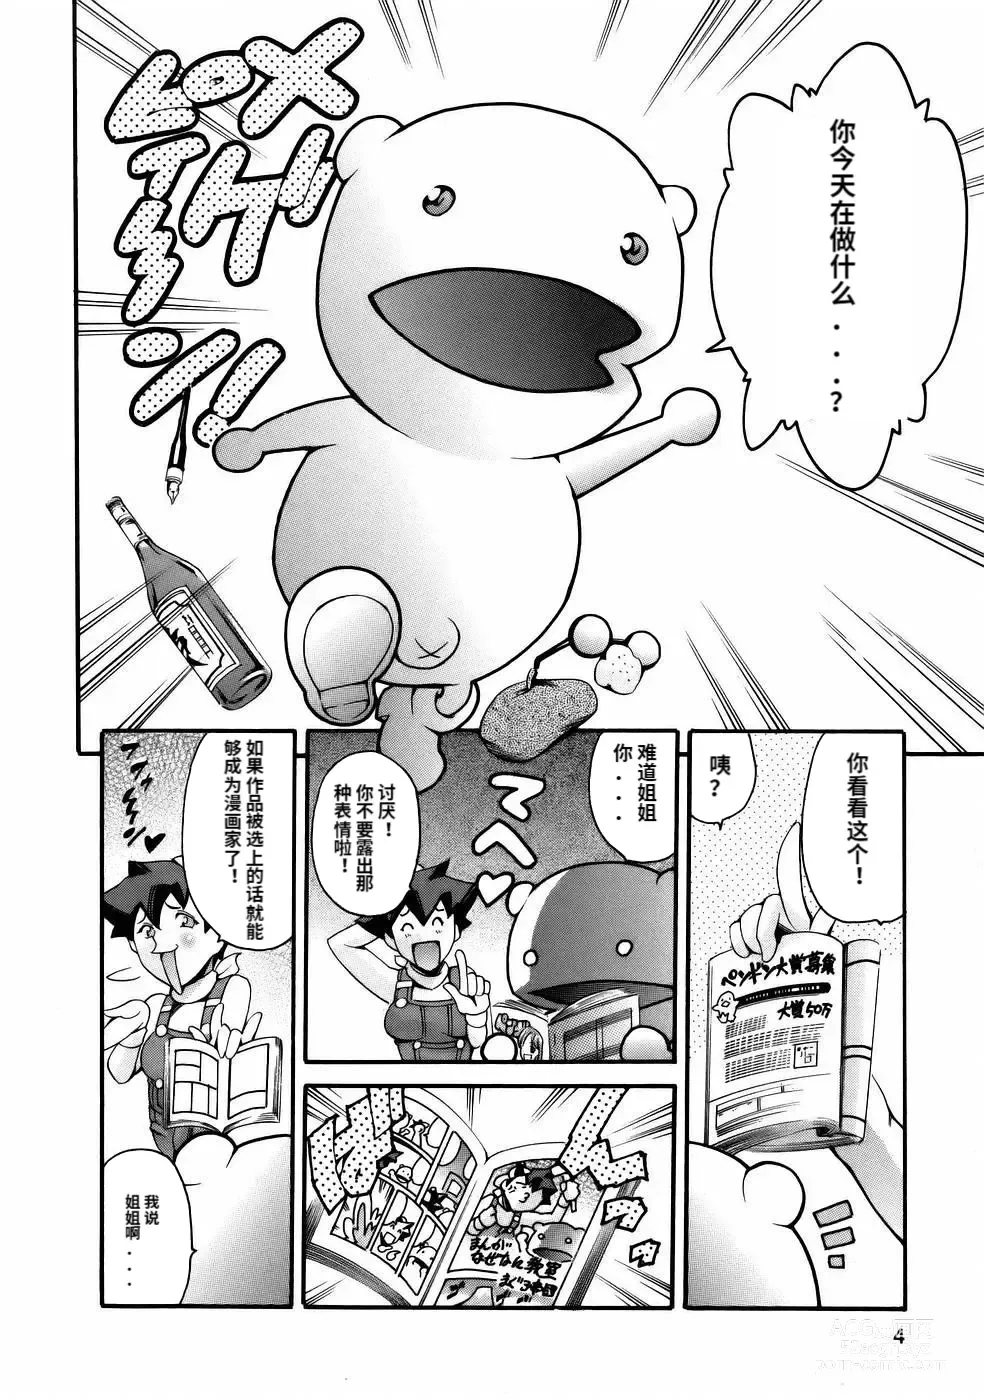 Page 6 of manga Manga Naze Nani Kyoushitsu